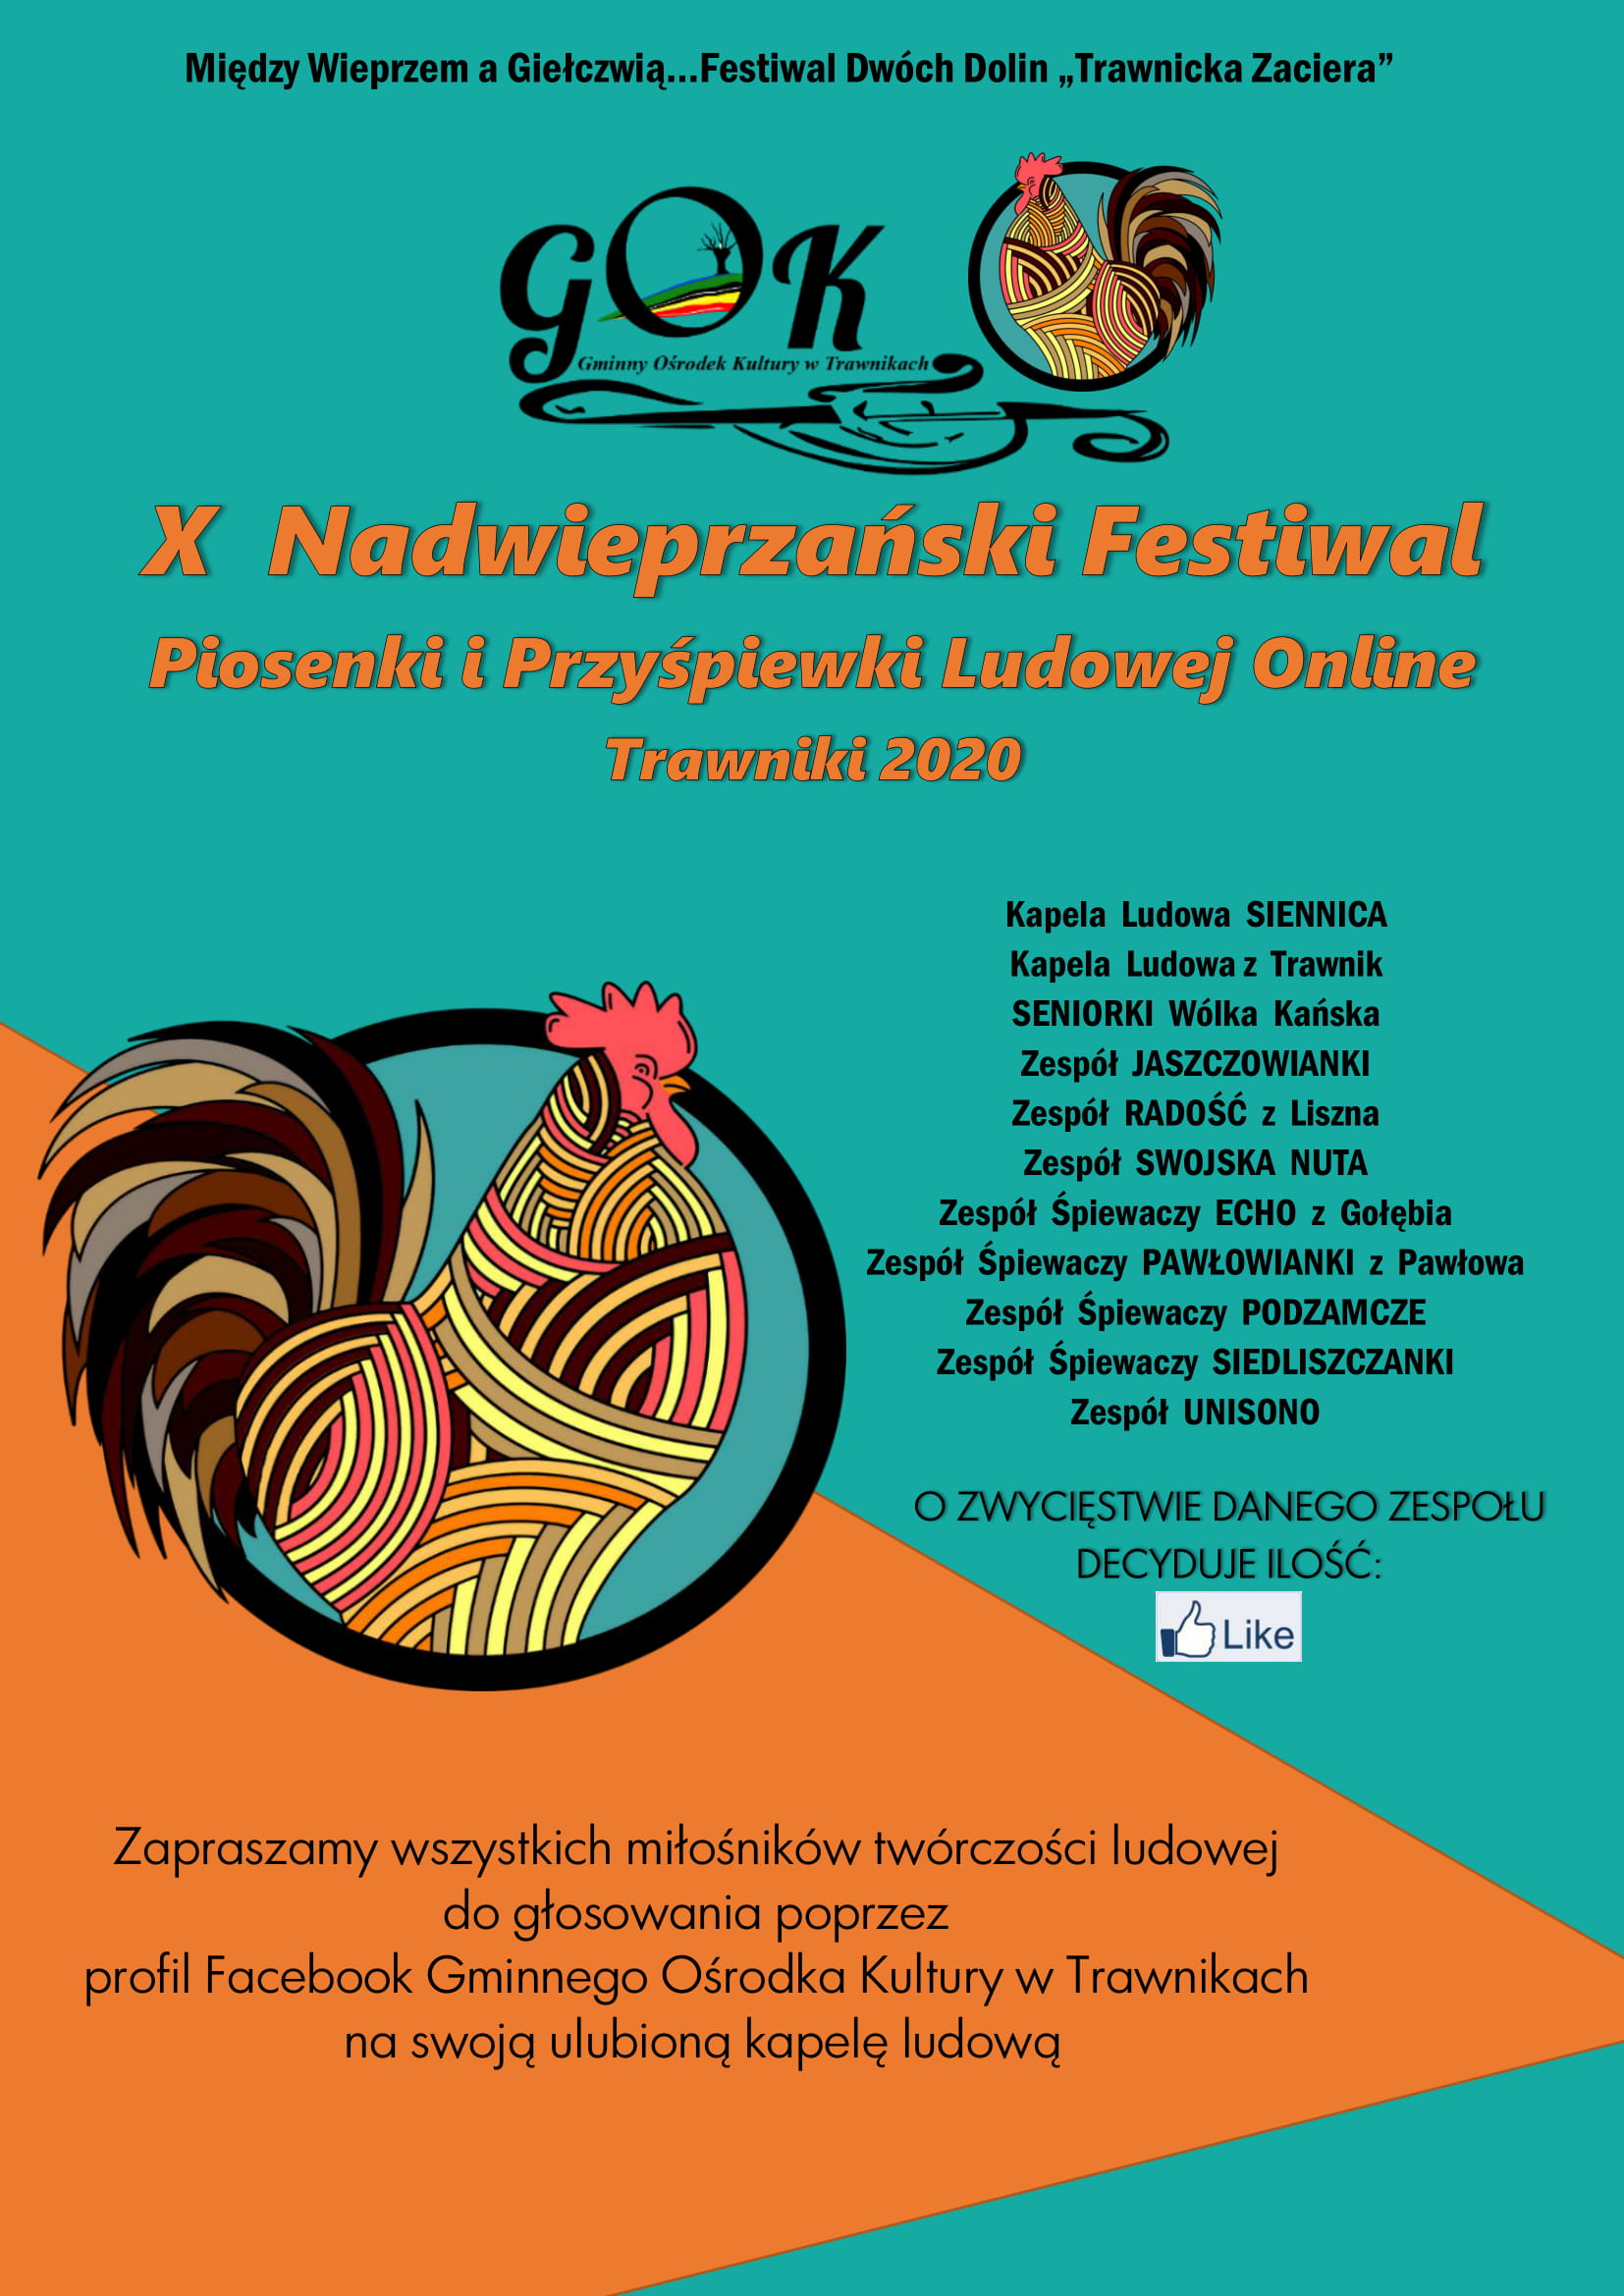 X Nadwieprzański Festiwal 1